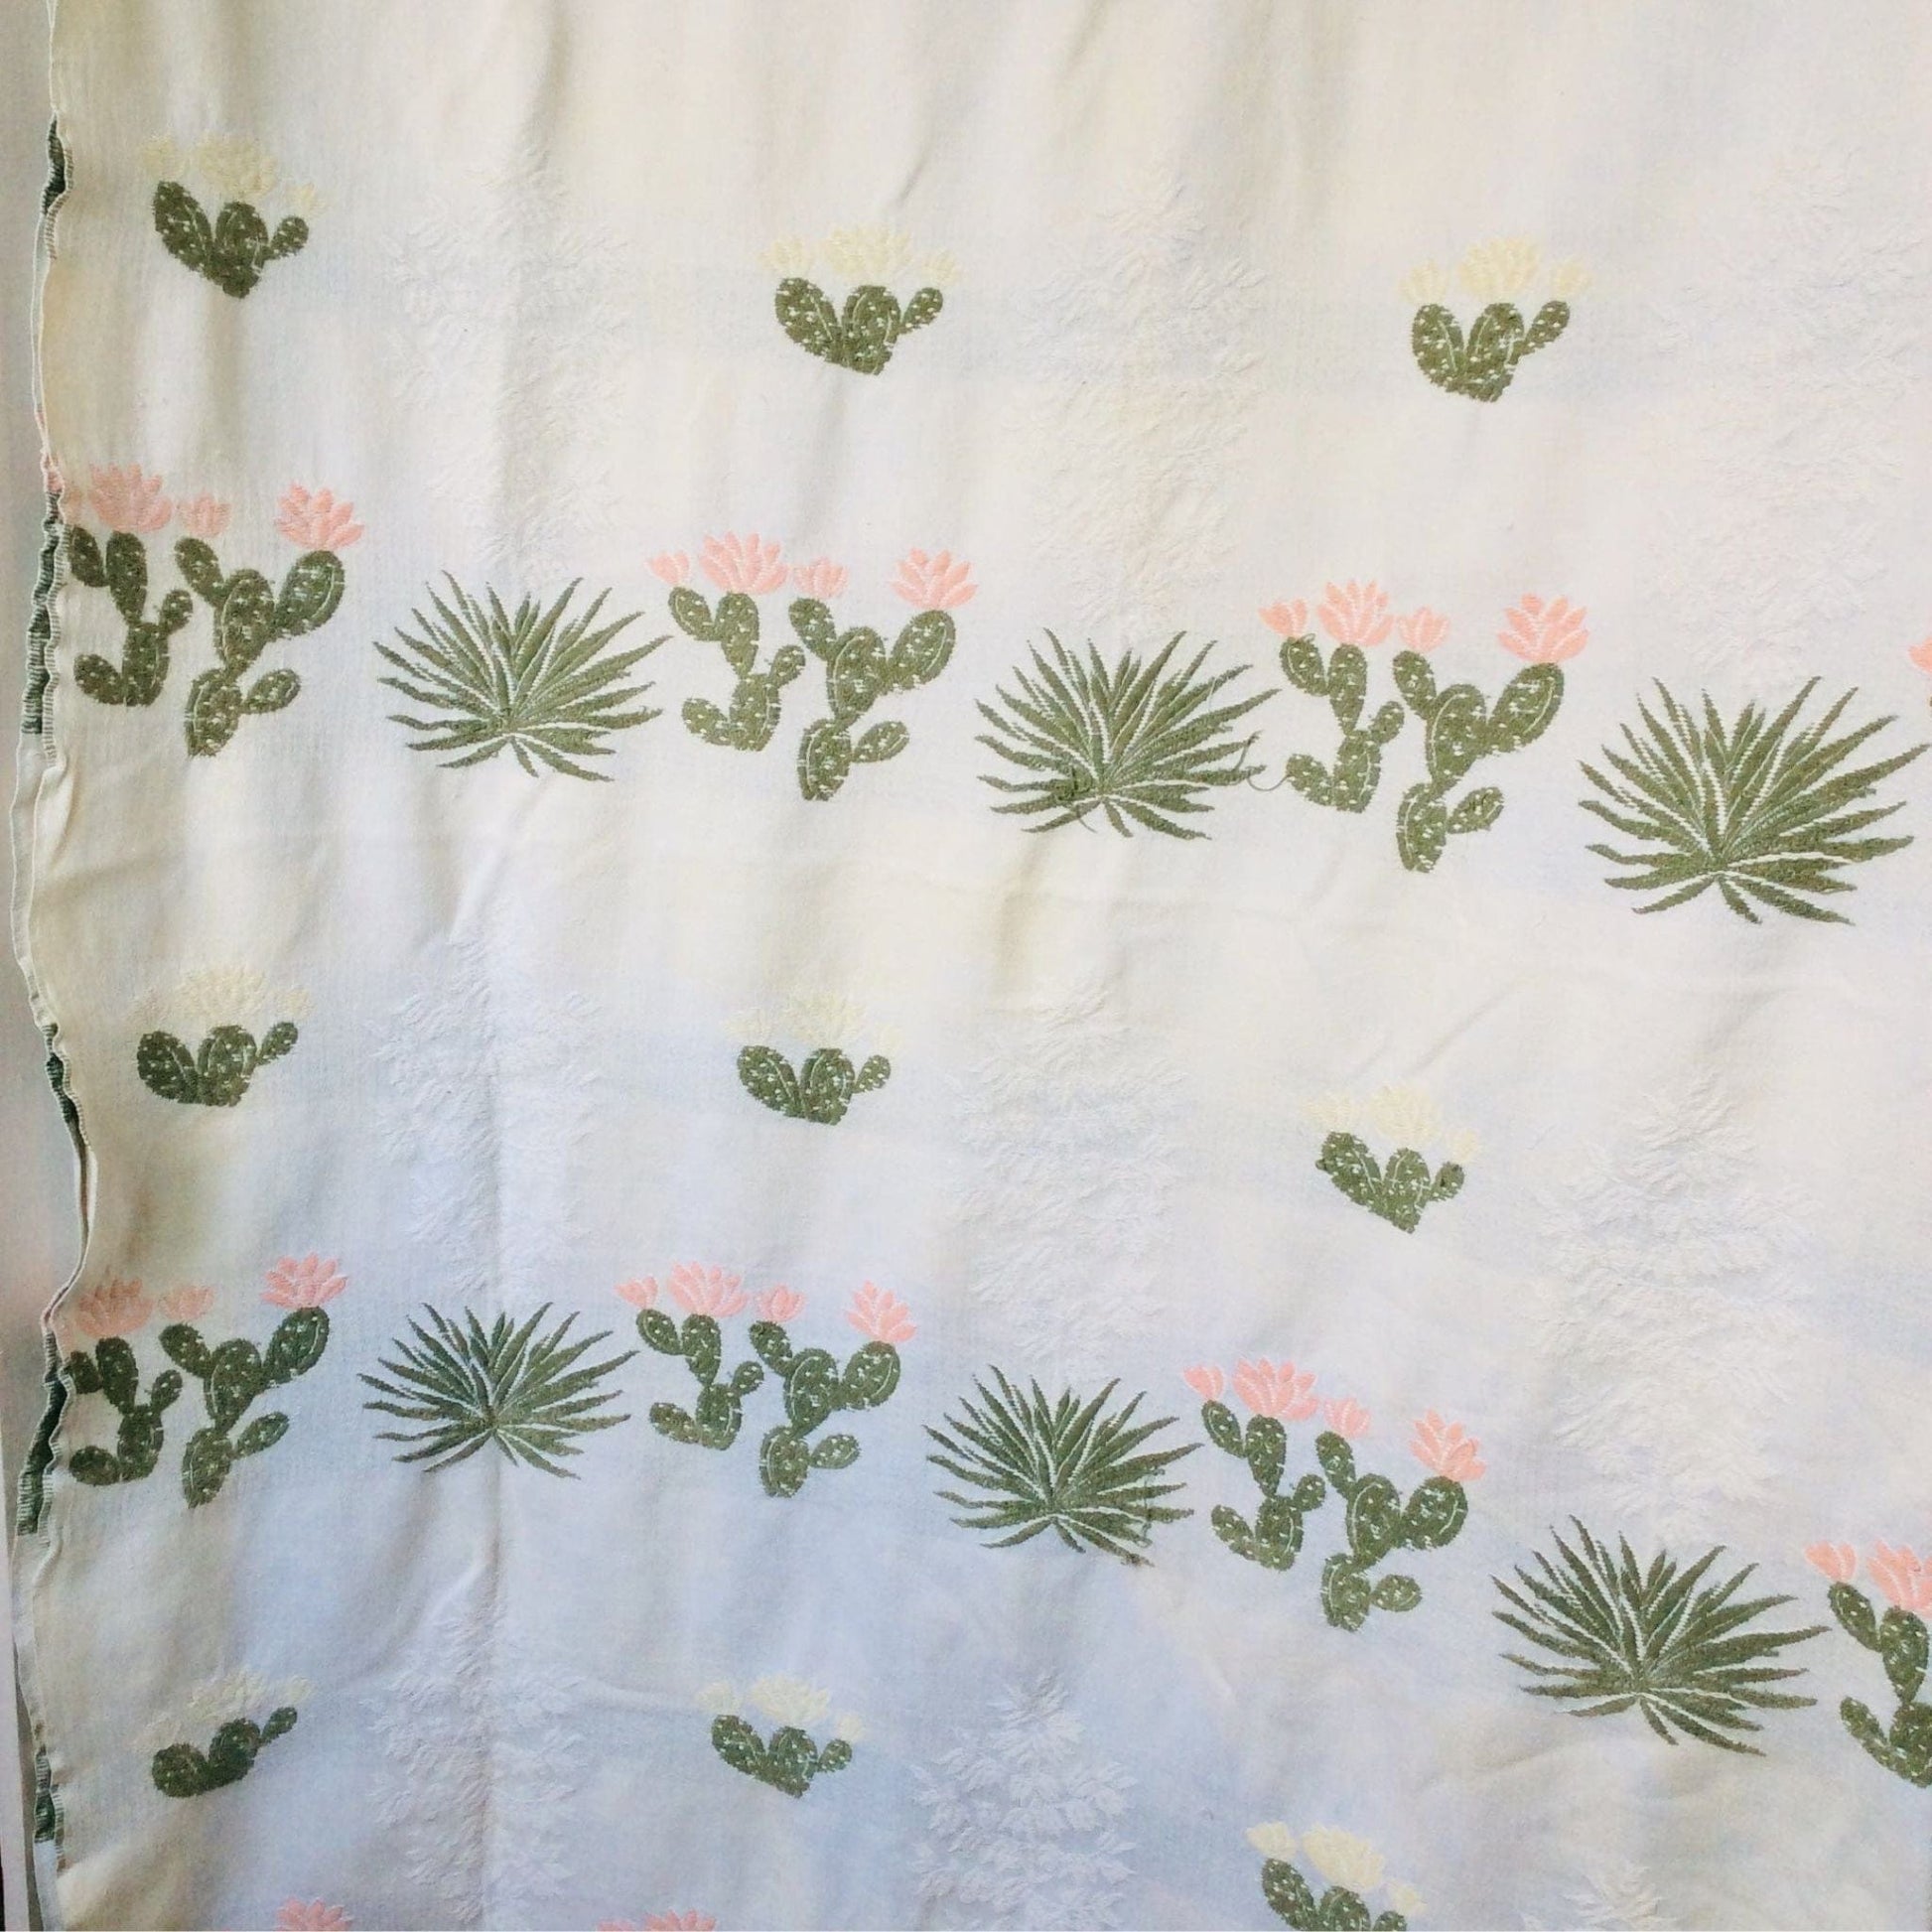 Bates Cactus Bedspread Multi / Cotton / Vintage 1950s